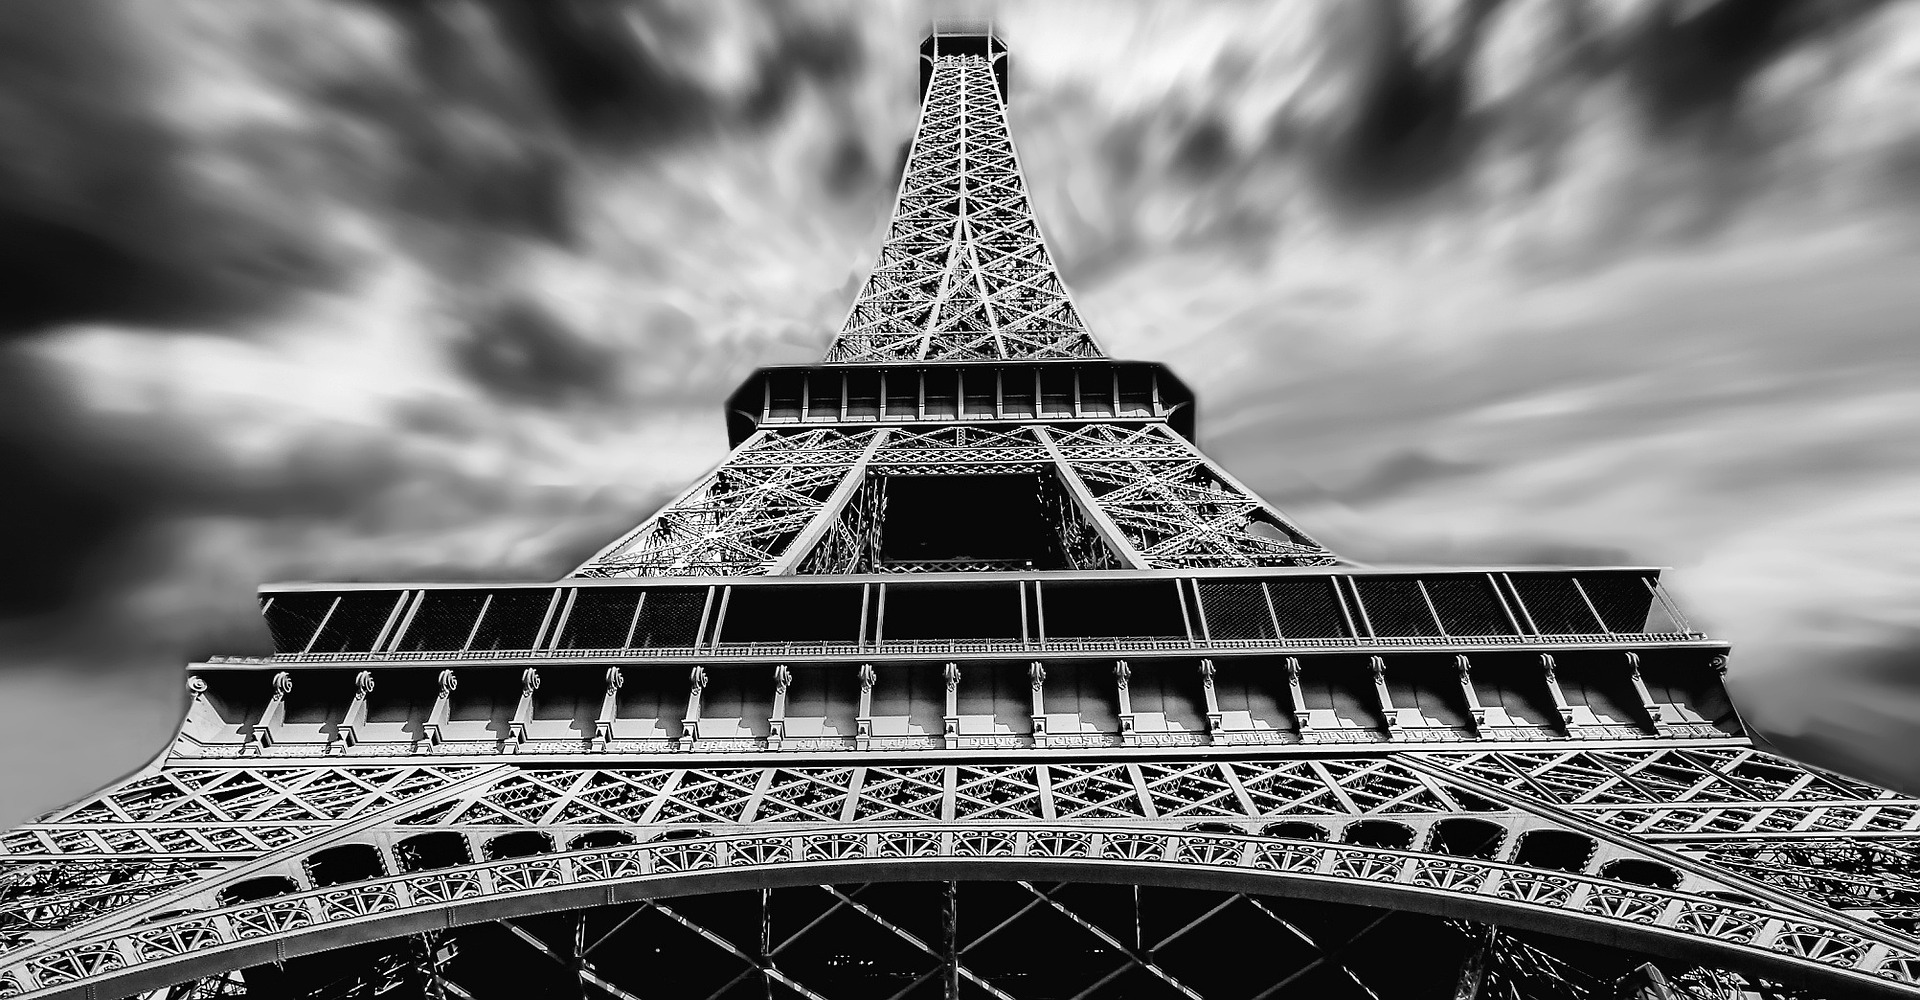 La Torre Eiffel potrebbe aver ispirato “La notte stellata” di Van Gogh